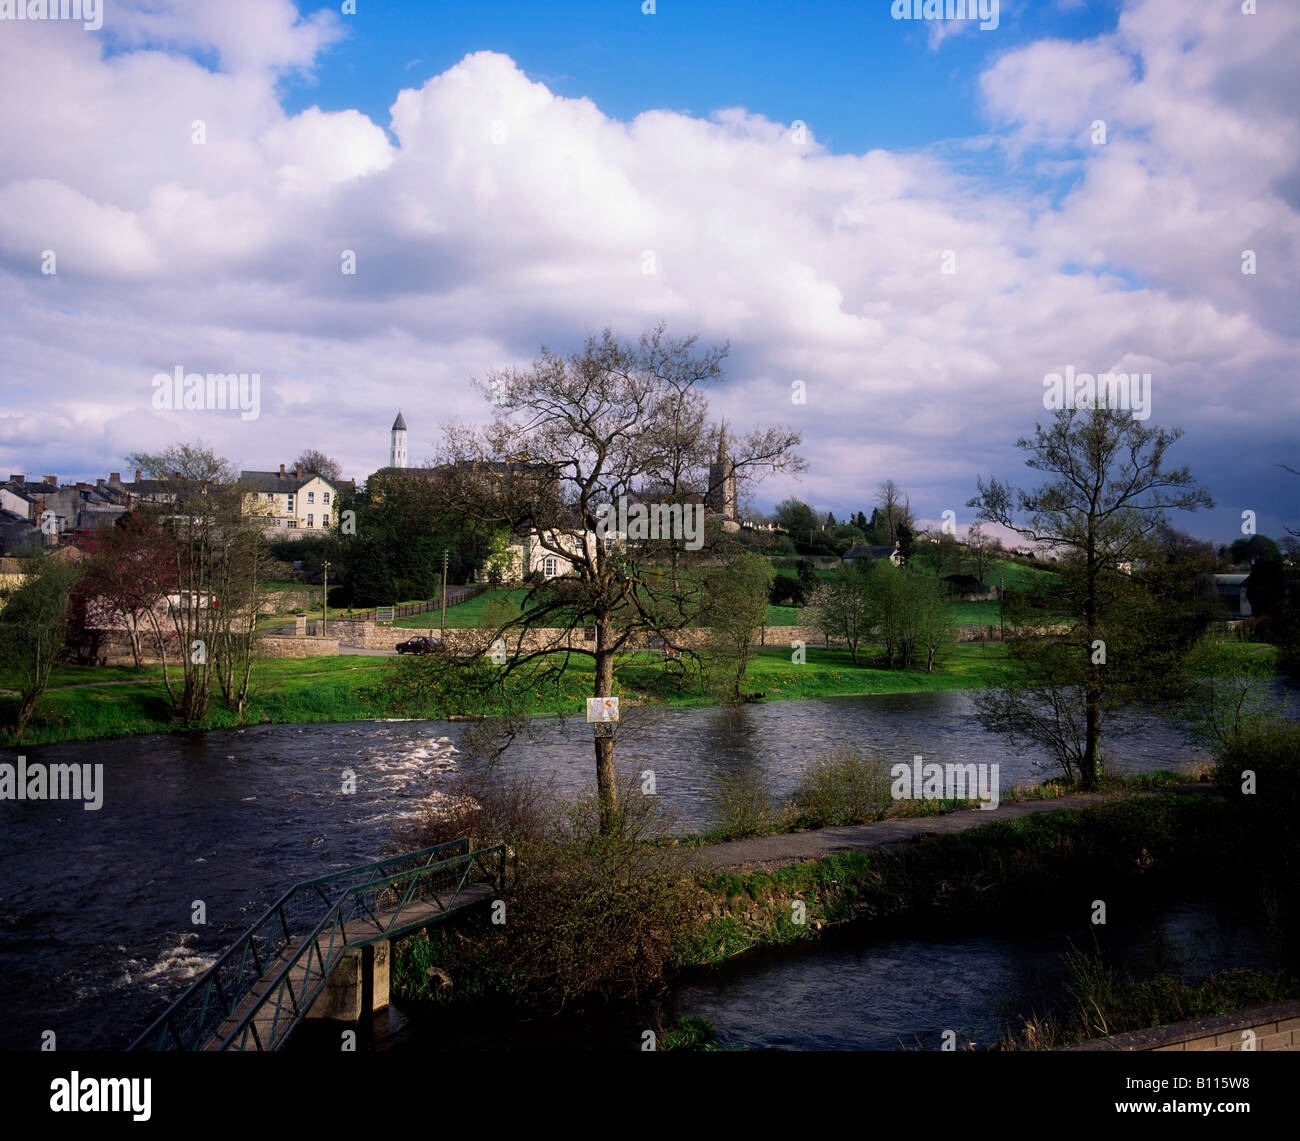 Belturbet, River Erne, County Cavan, Ireland Stock Photo